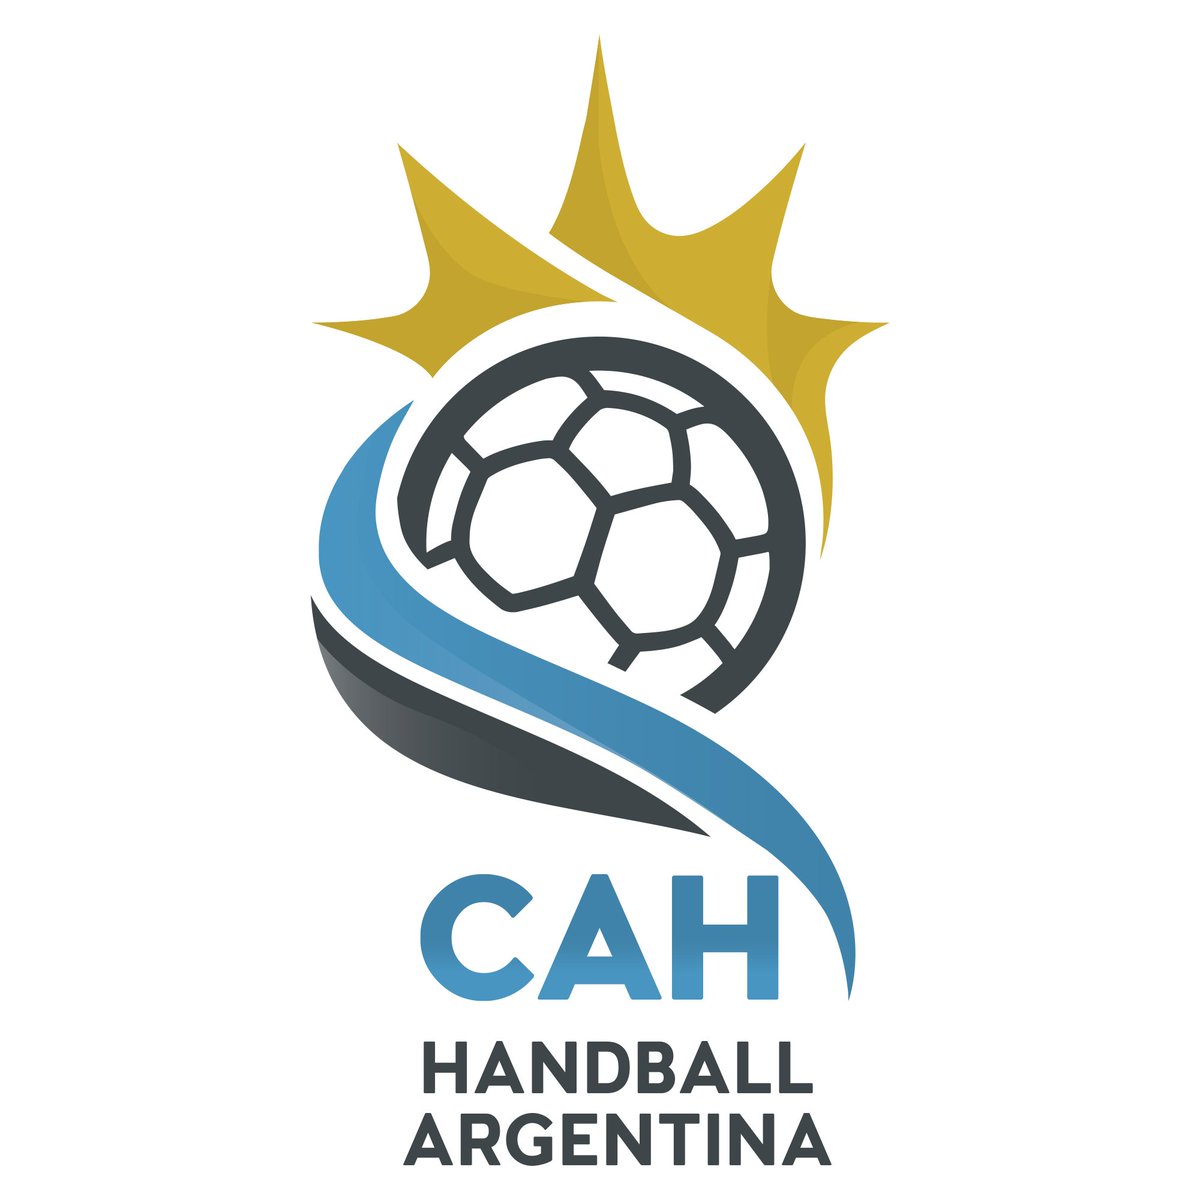 Sel. Argentina Handball 🇦🇷 on X: "Se aprobó por unanimidad ...